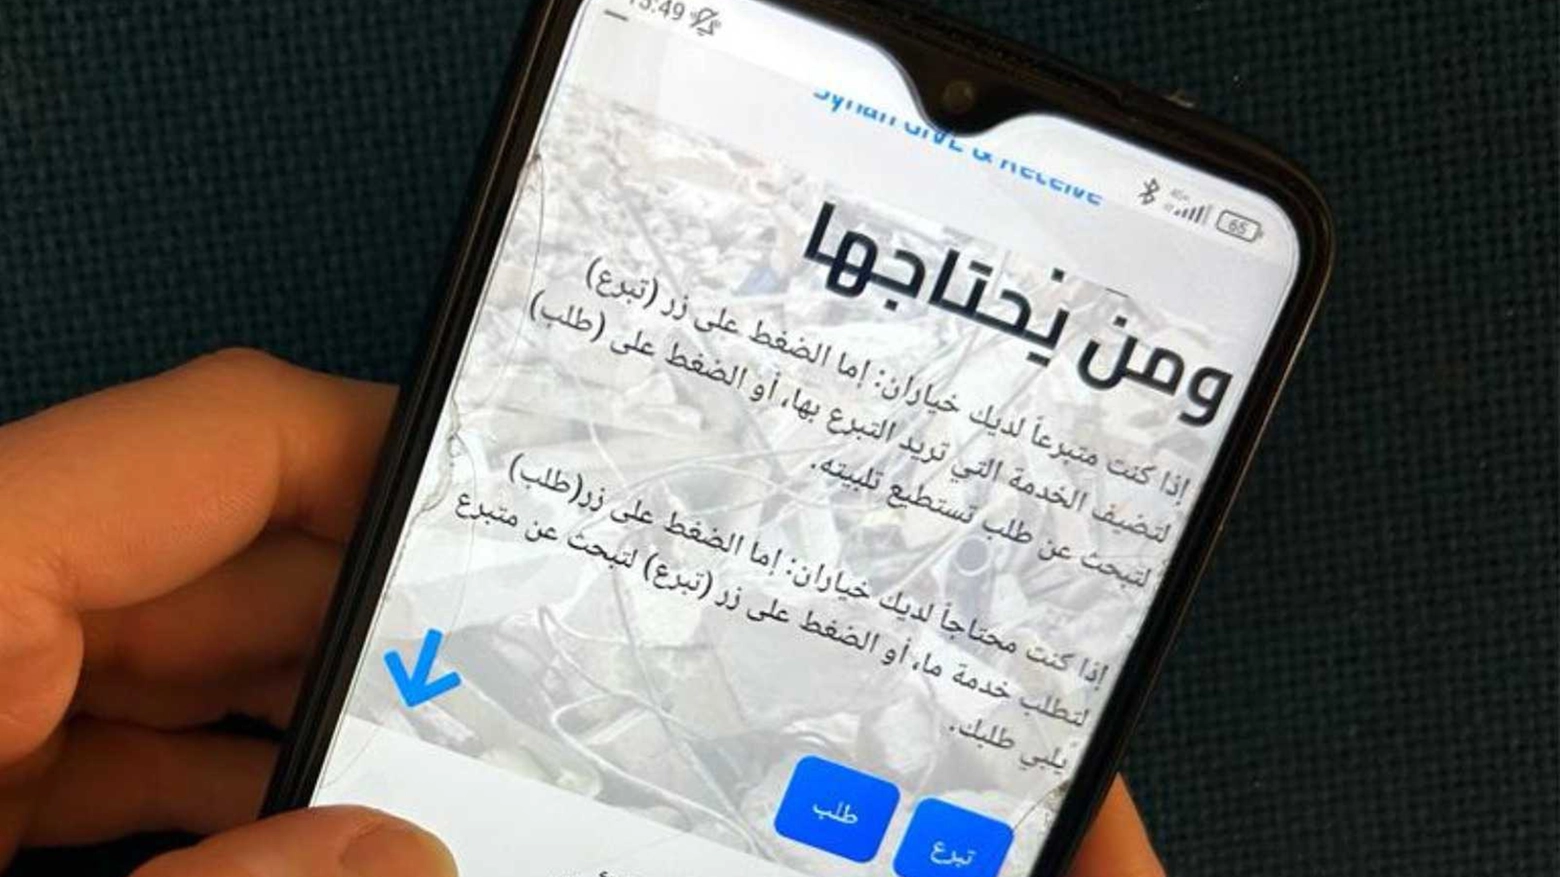 Ecco la front page della App creata dal giovane studente siriano